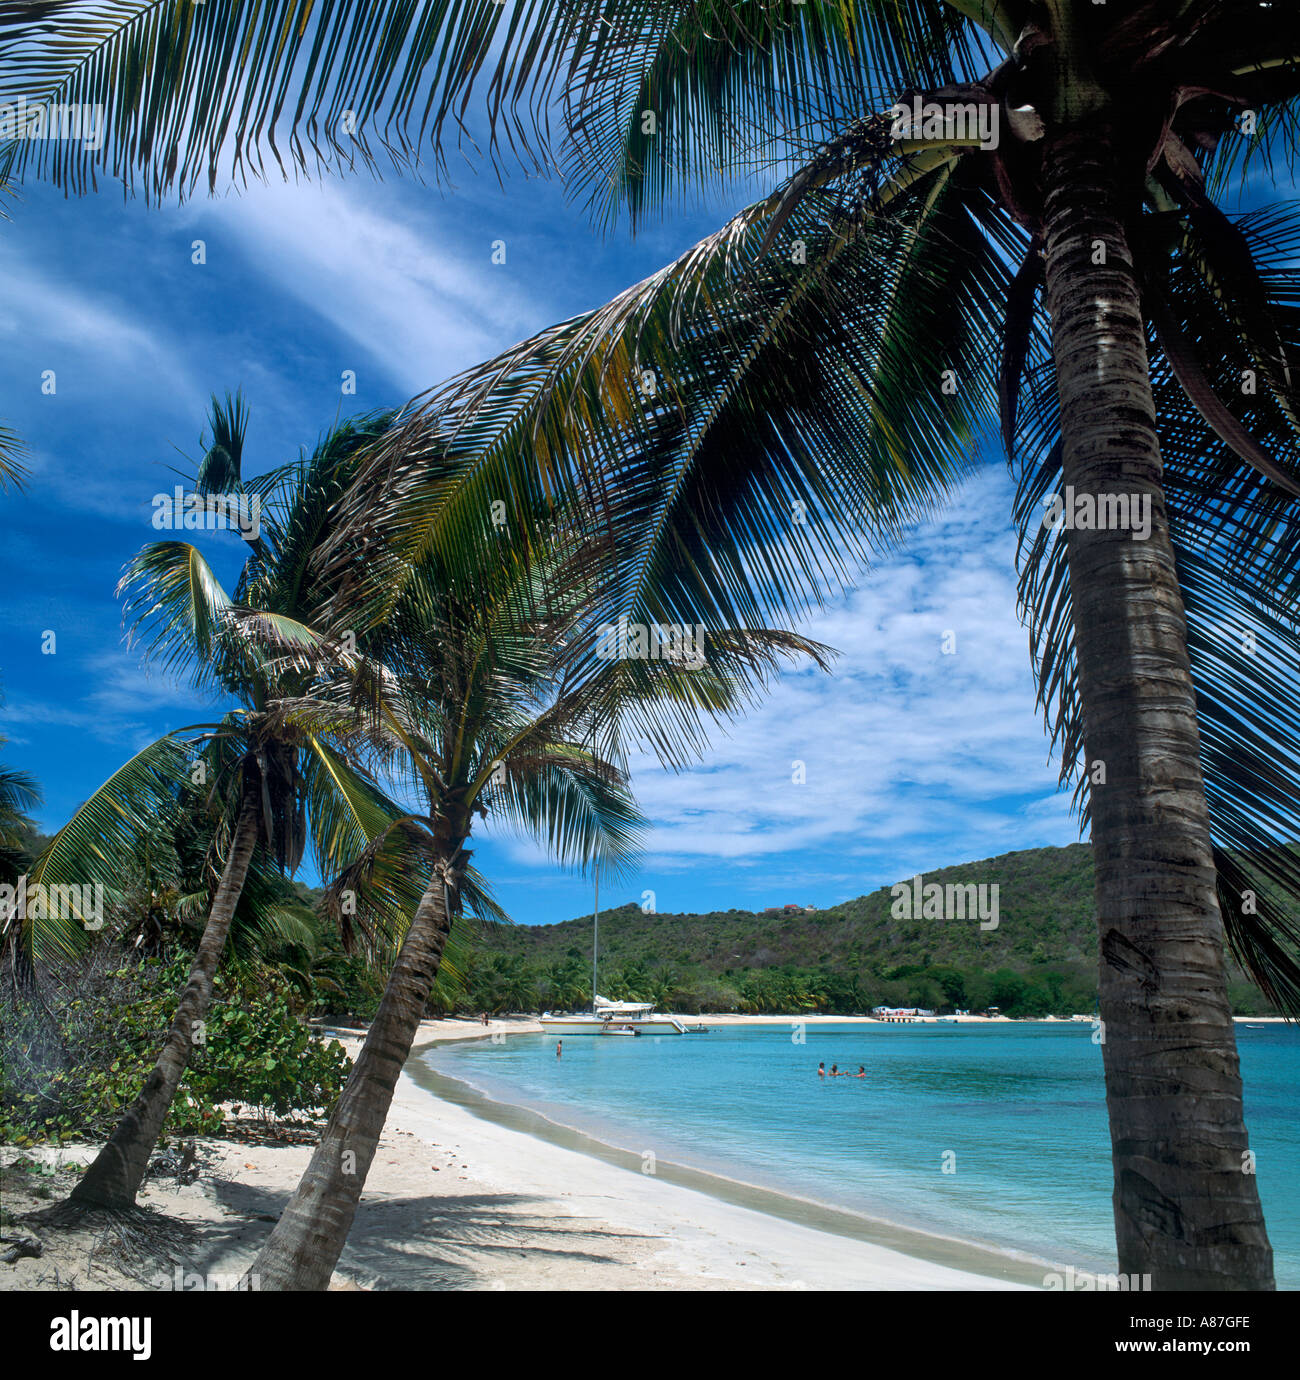 Playa tranquila, Satwhistle Bay, Mayreau, Las Granadinas, Indias Occidentales, el Caribe Foto de stock